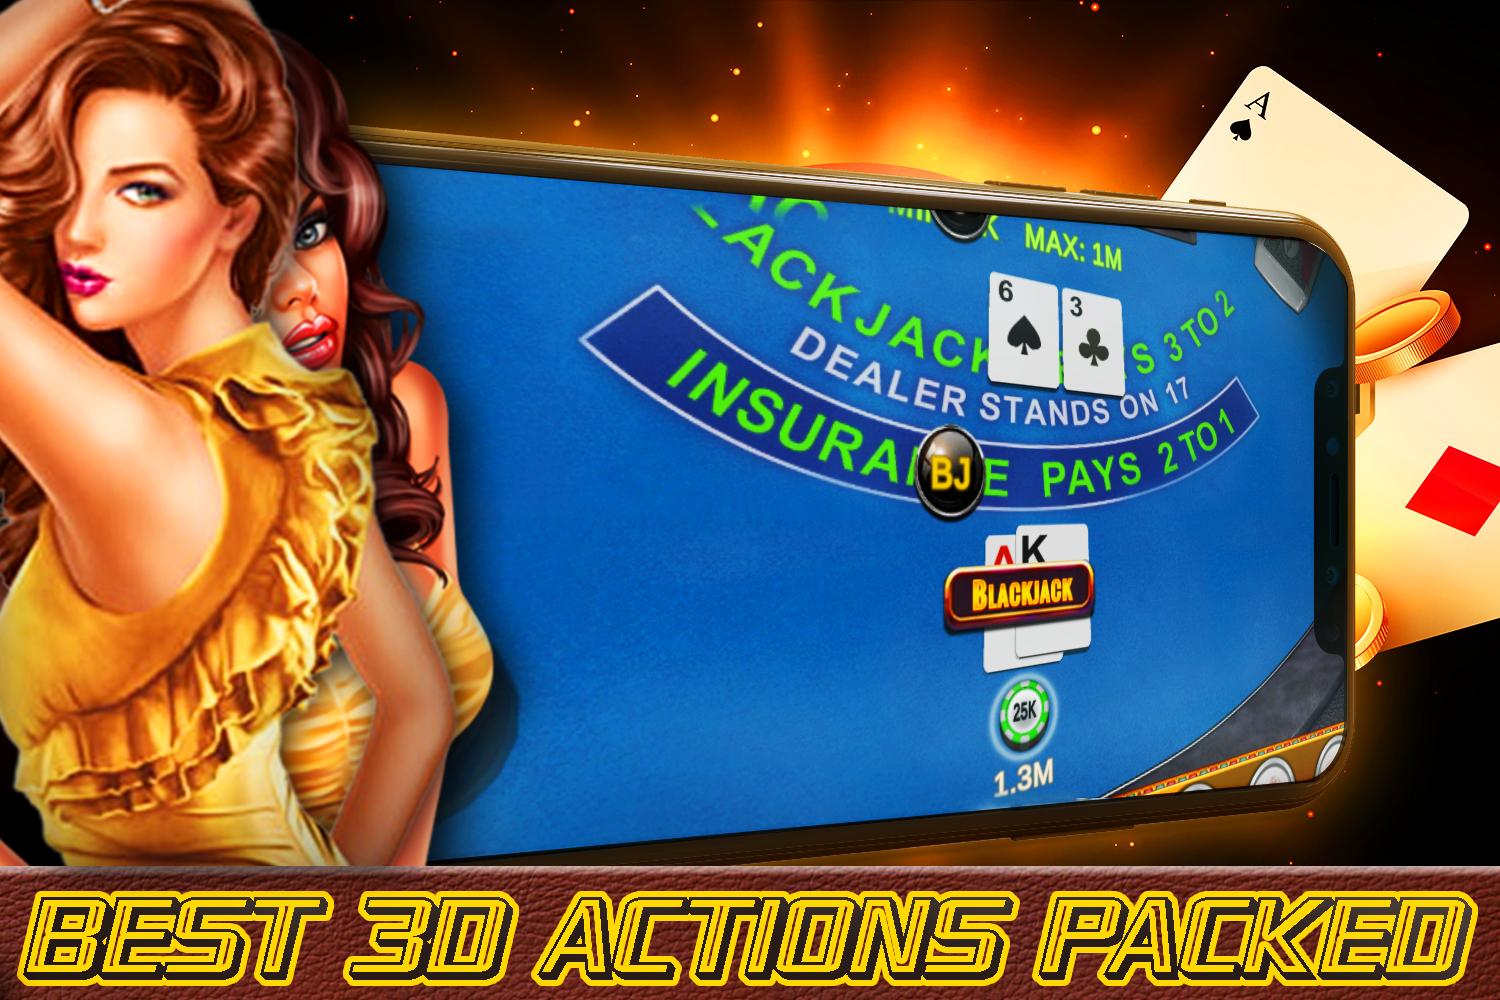 Blackjack - Free Vegas Casino Card Game 1.2 Screenshot 6